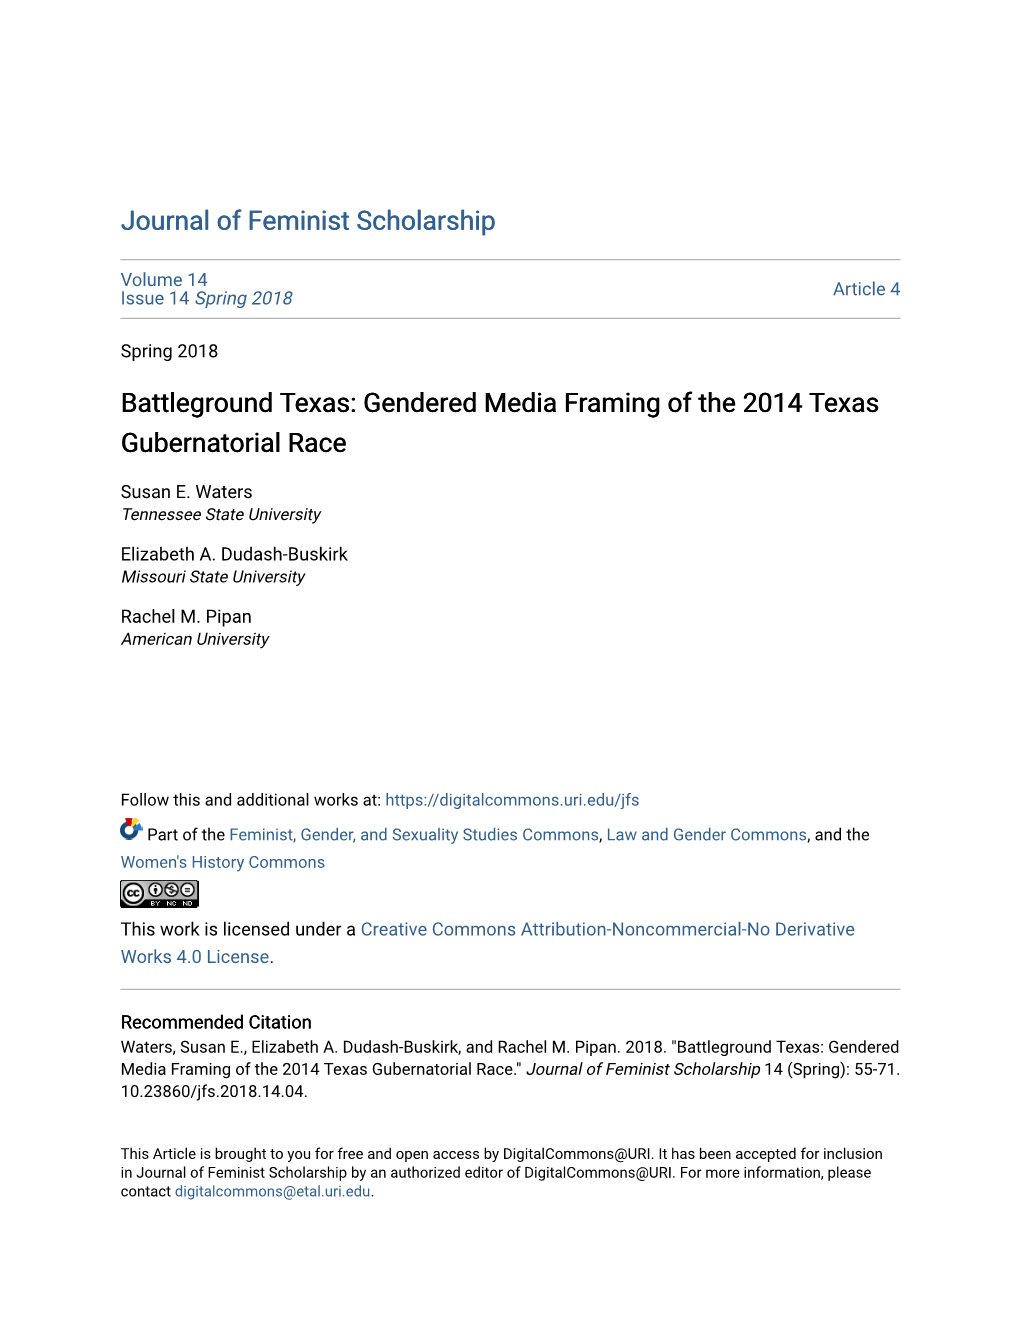 Gendered Media Framing of the 2014 Texas Gubernatorial Race